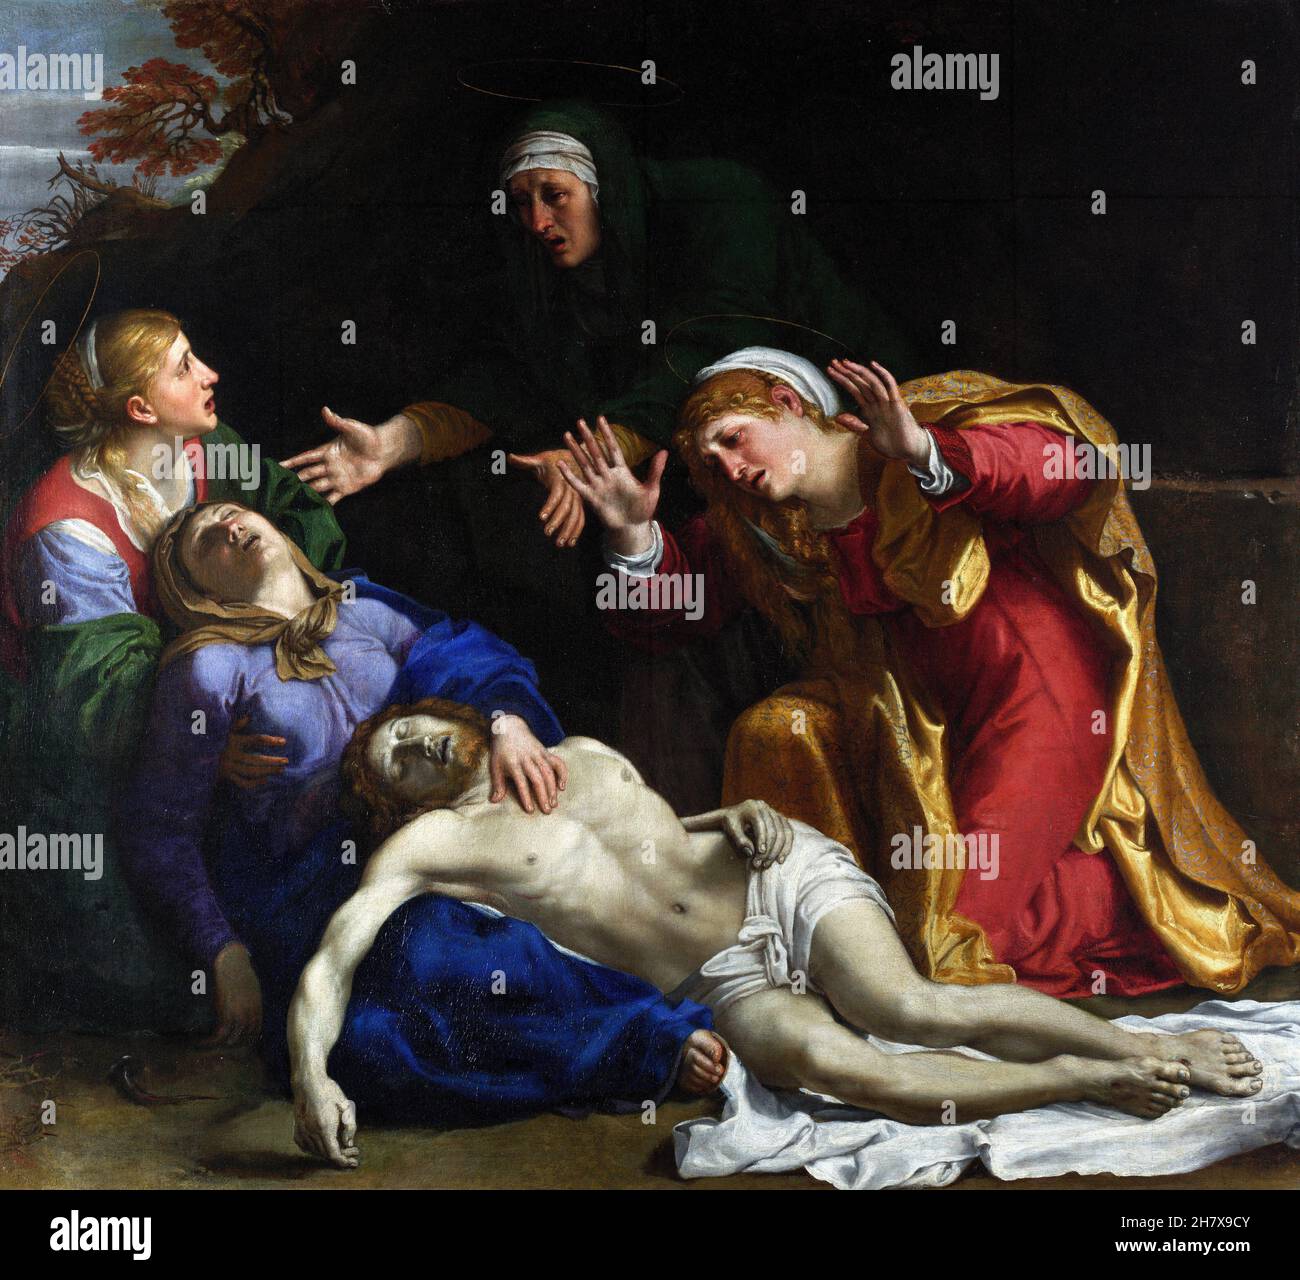 Le Christ mort a pleuré ('les trois Maries') par le peintre baroque italien, Annibale Carracci (1560-1609), huile sur toile, c.1604 Banque D'Images